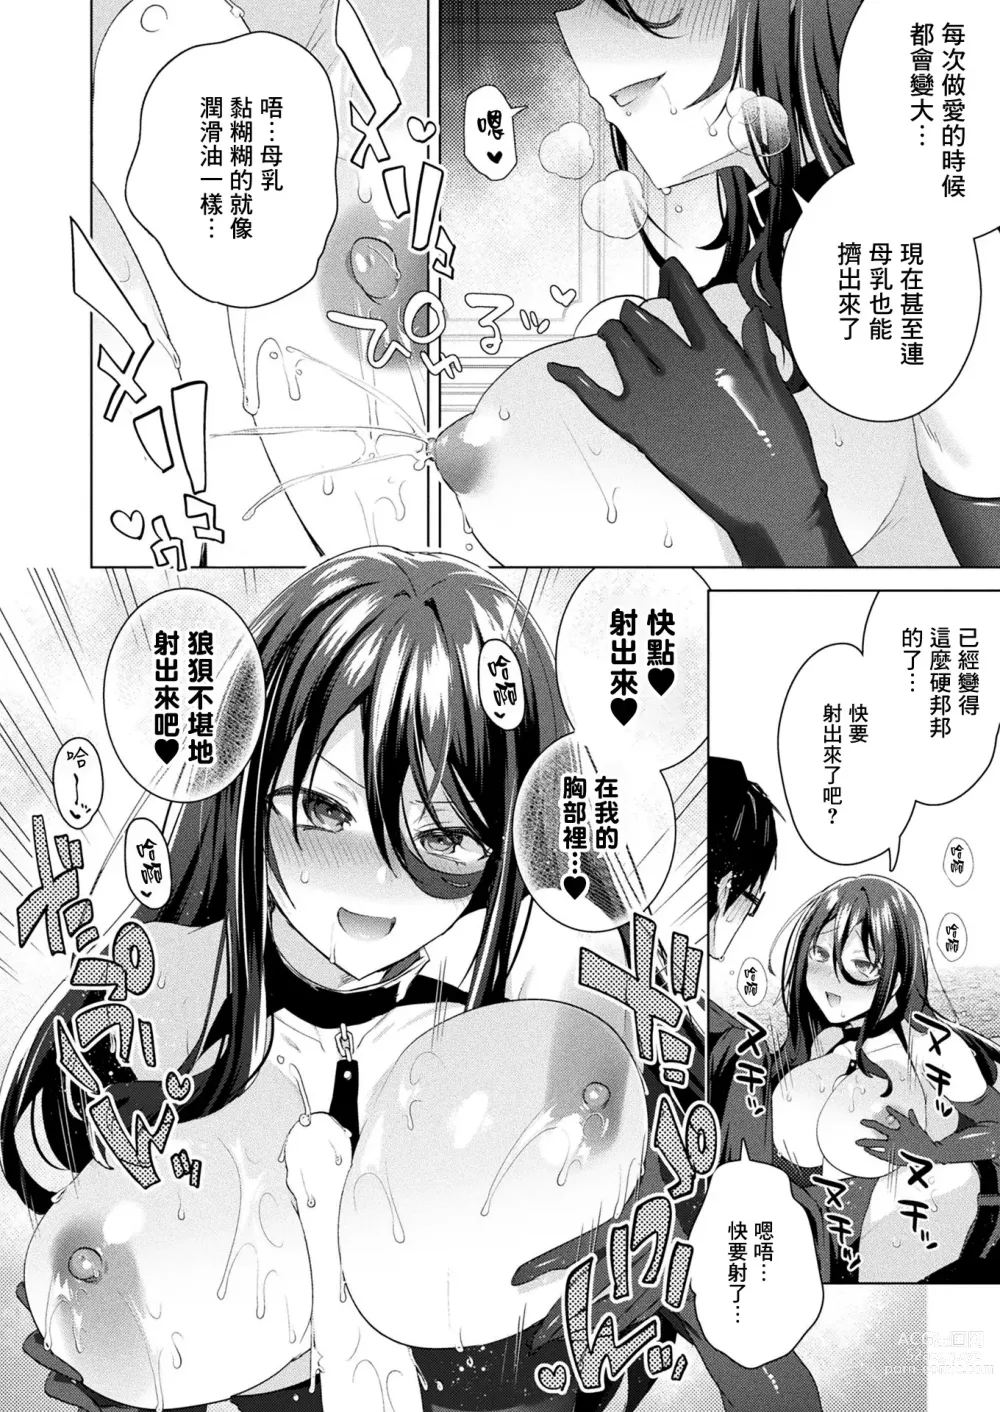 Page 5 of manga TS President Saishuuwa